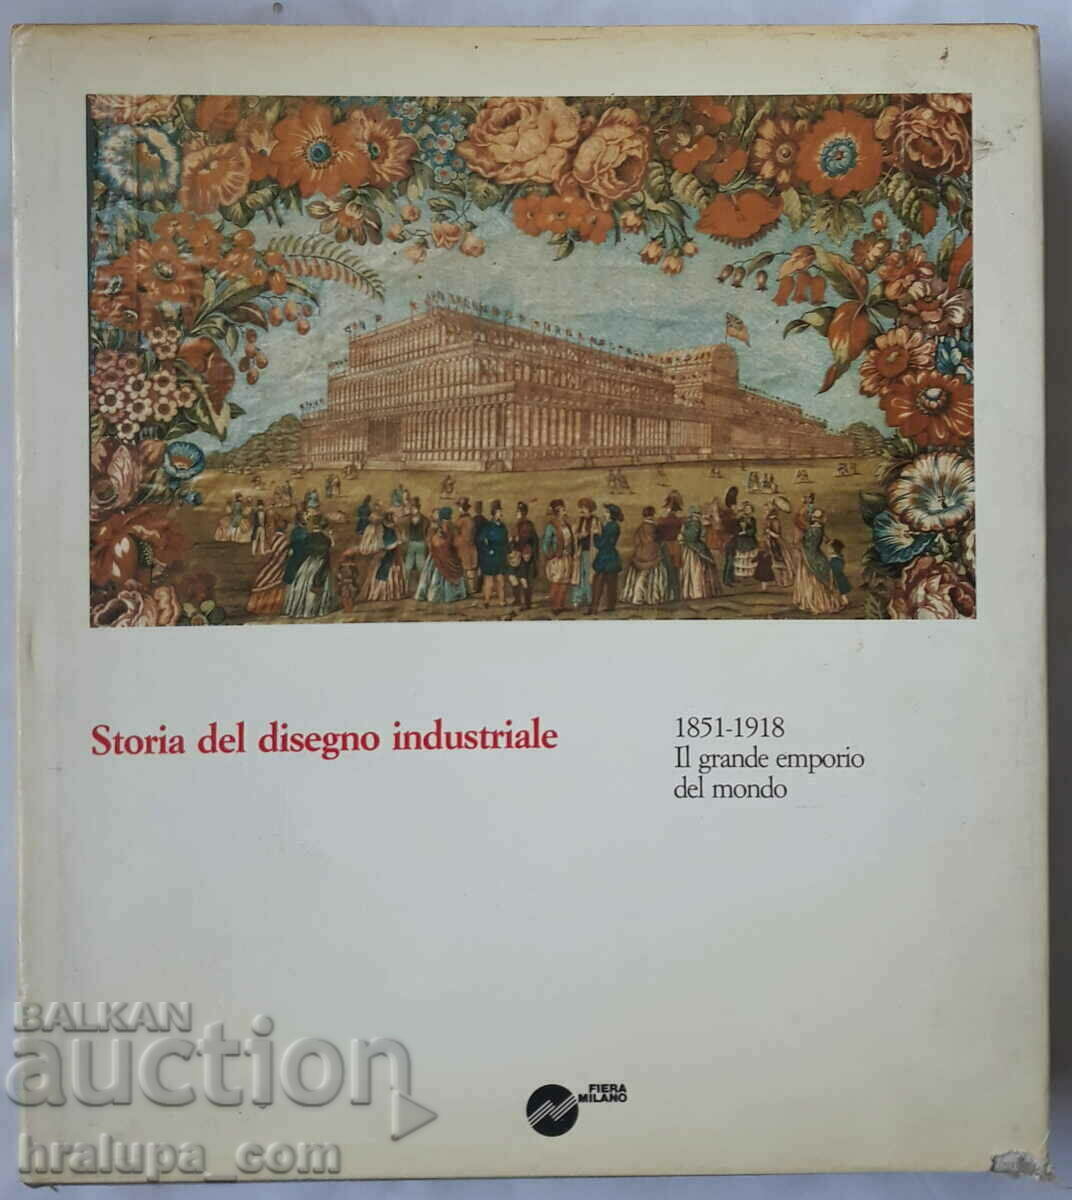 Το βιβλίο Storia del disegno industriale 1851-1918